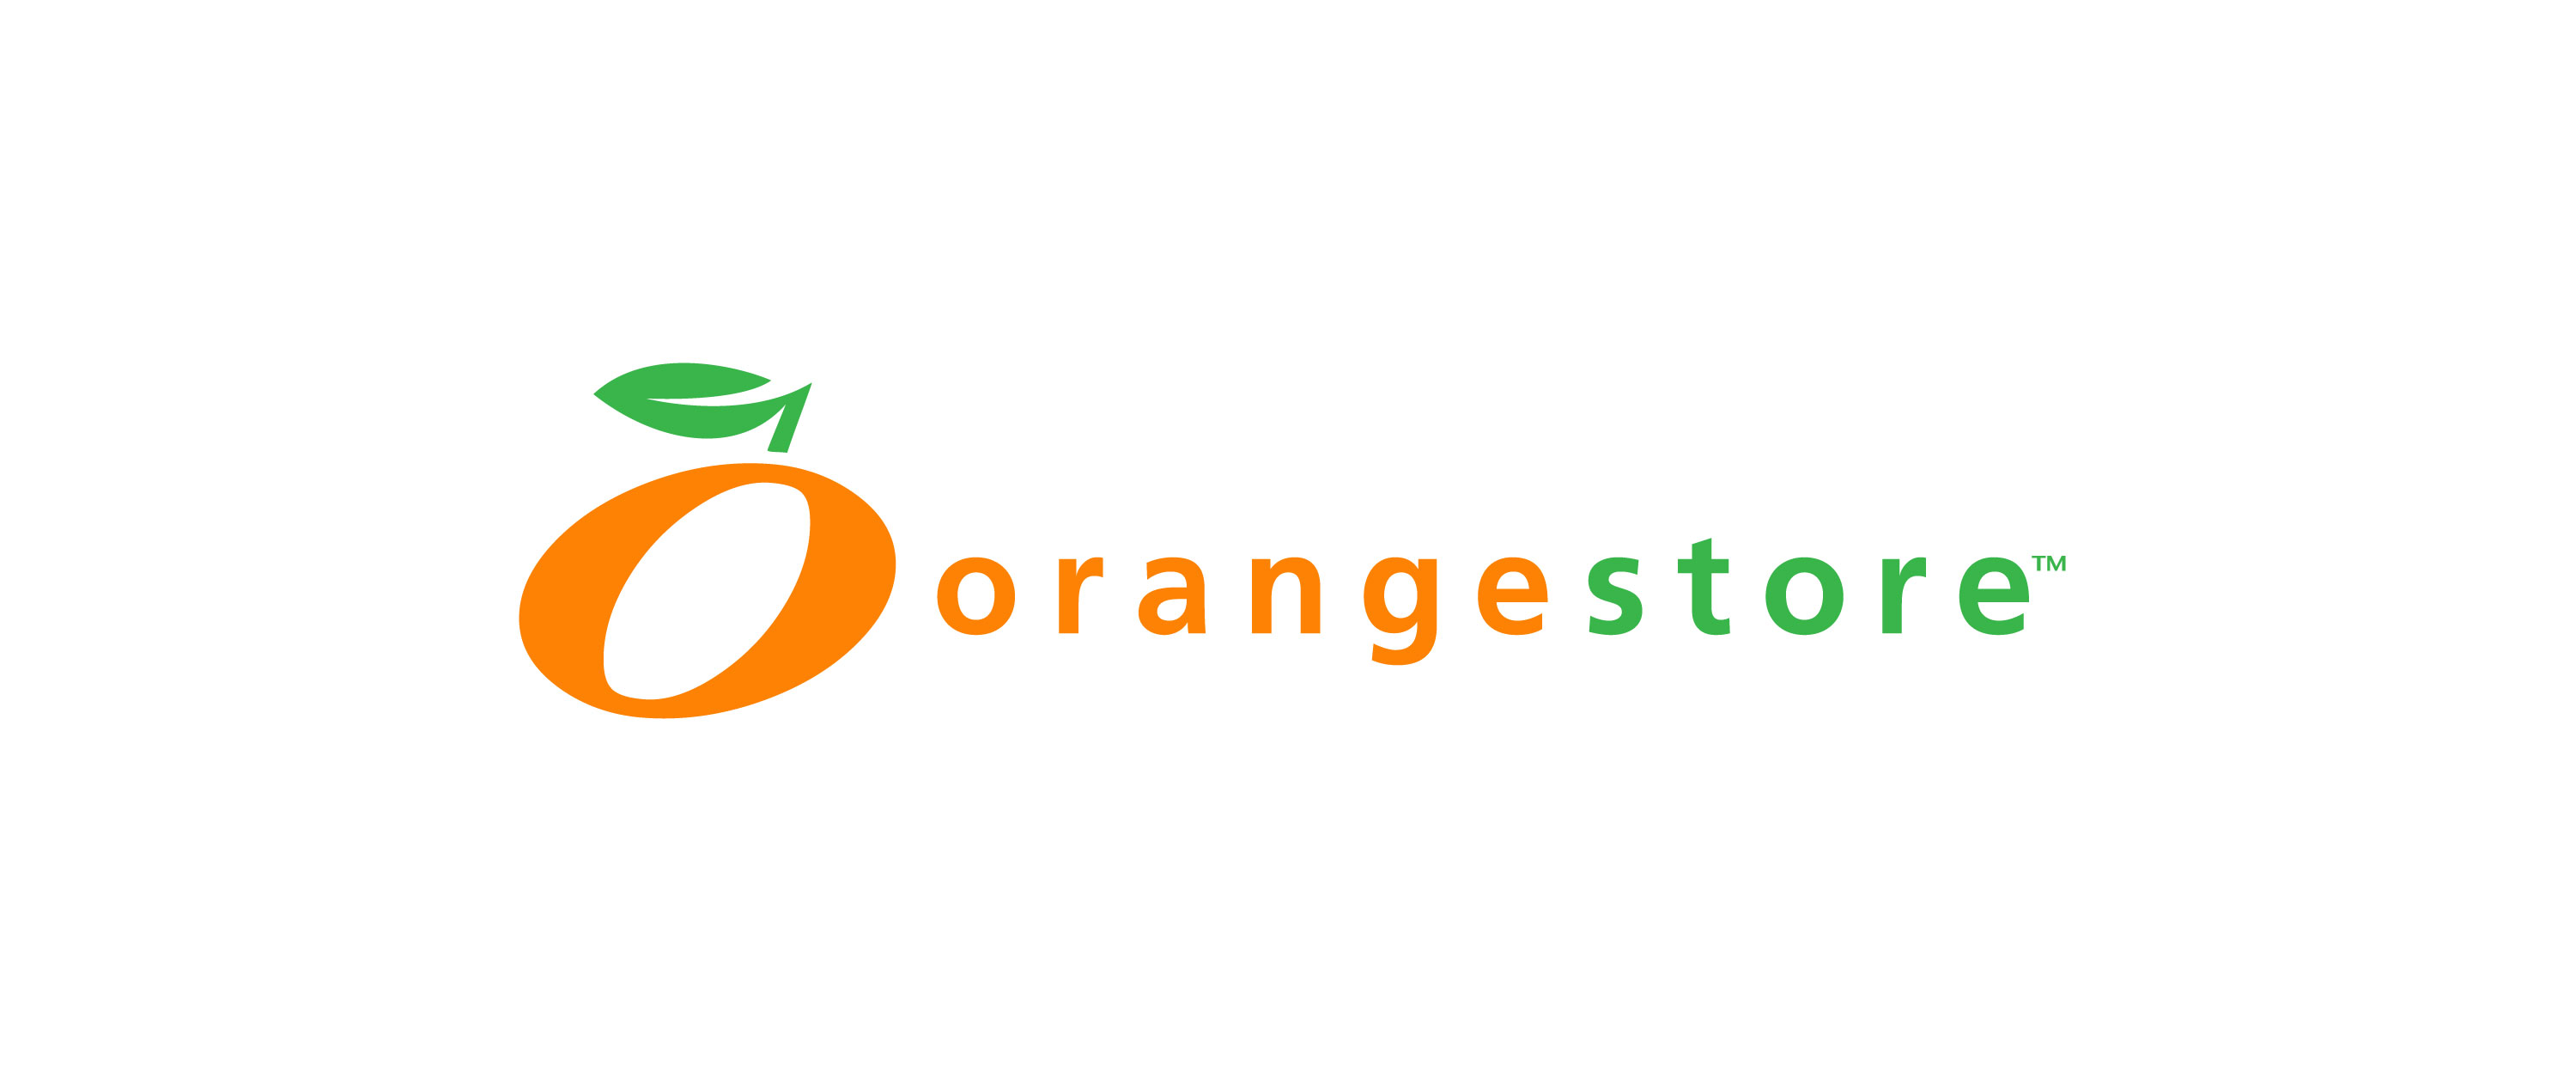 Orangestore